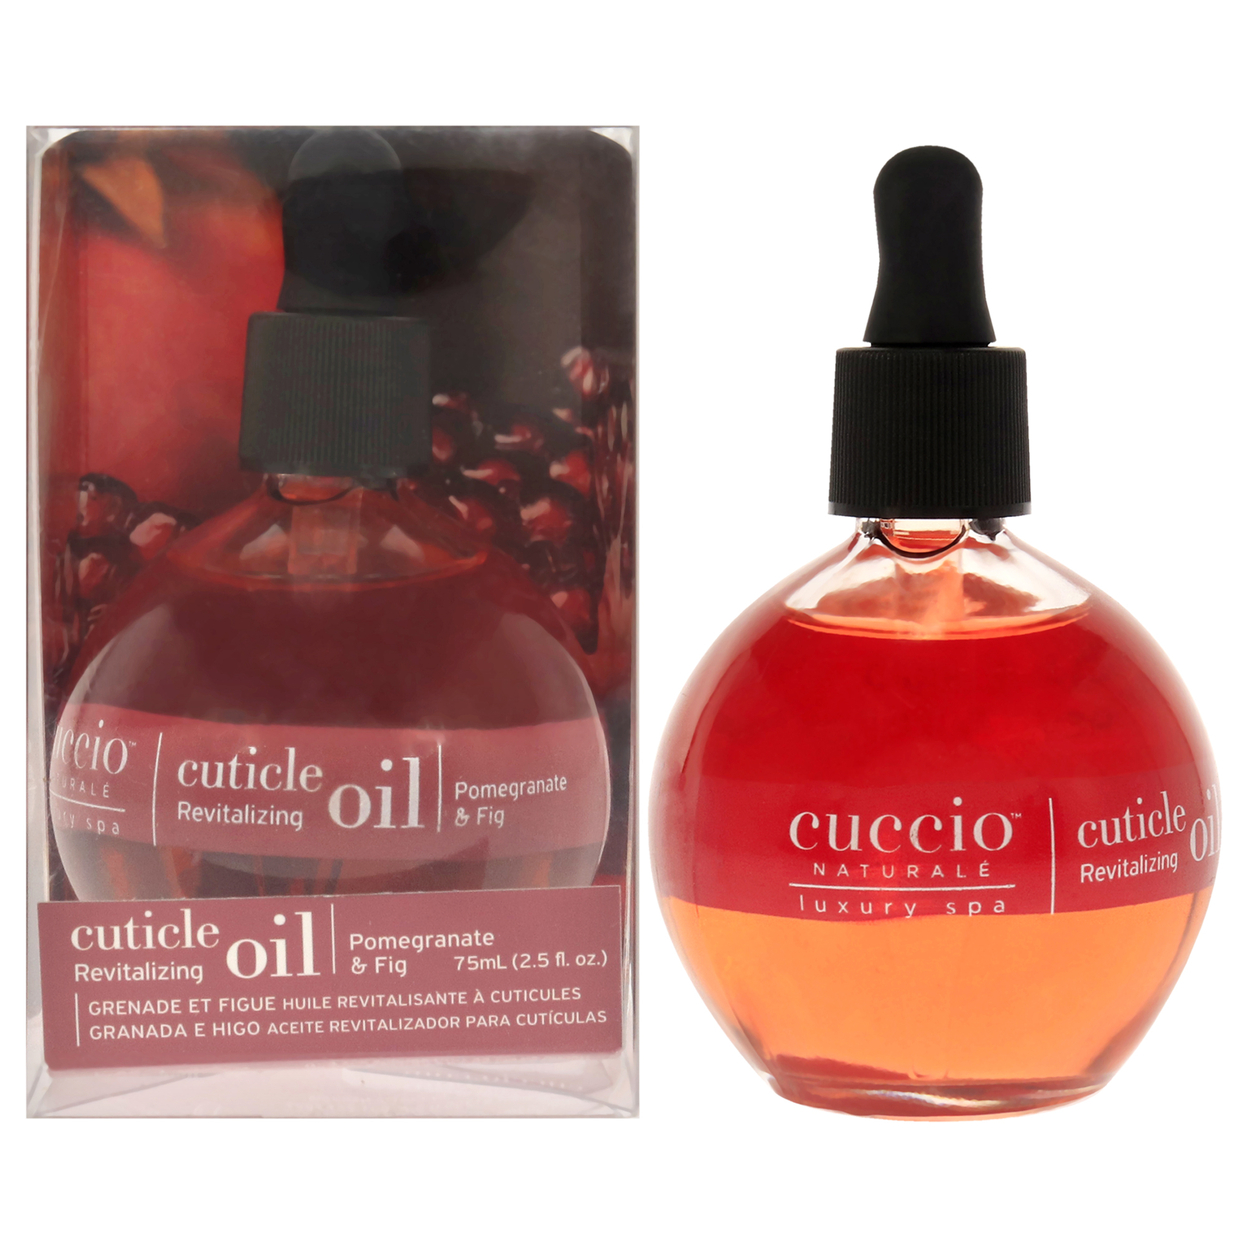 Cuccio Naturale Cuticle Revitalizing Oil - Pomegranate And Fig Manicure 2.5 Oz